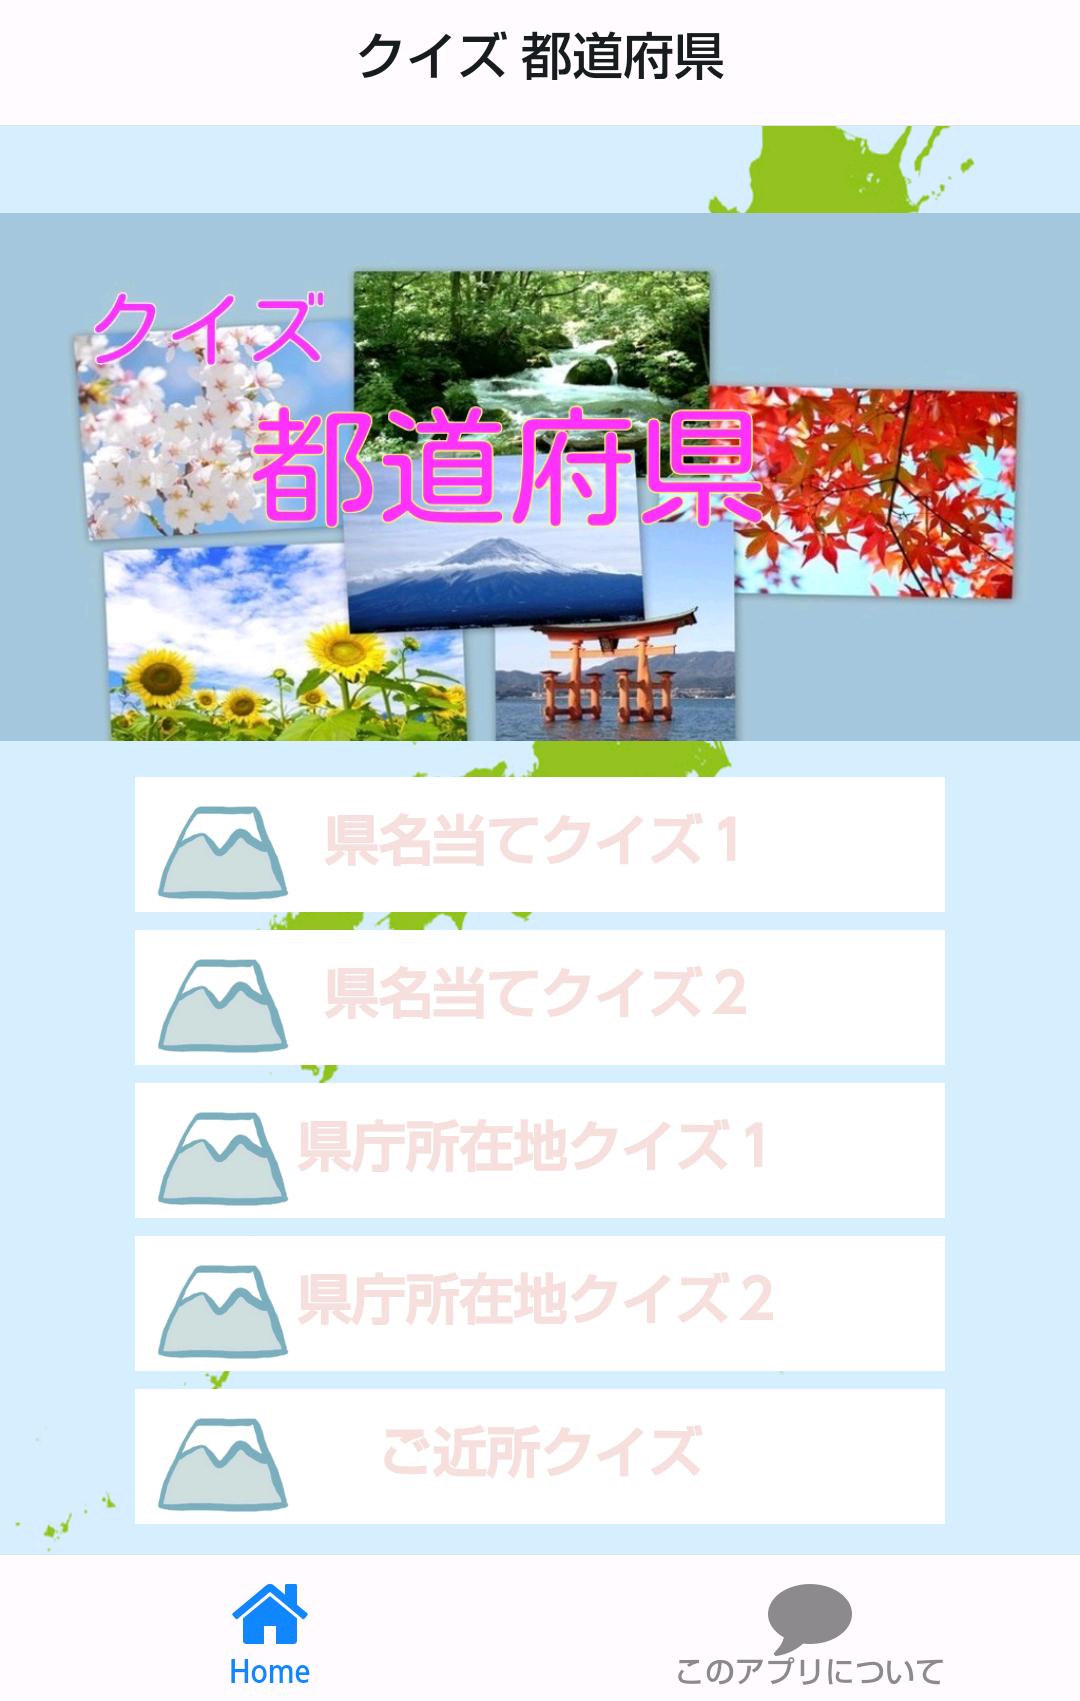 トップコレクション 都道府県 県庁所在地 クイズ 無料の印刷可能なイラスト素材